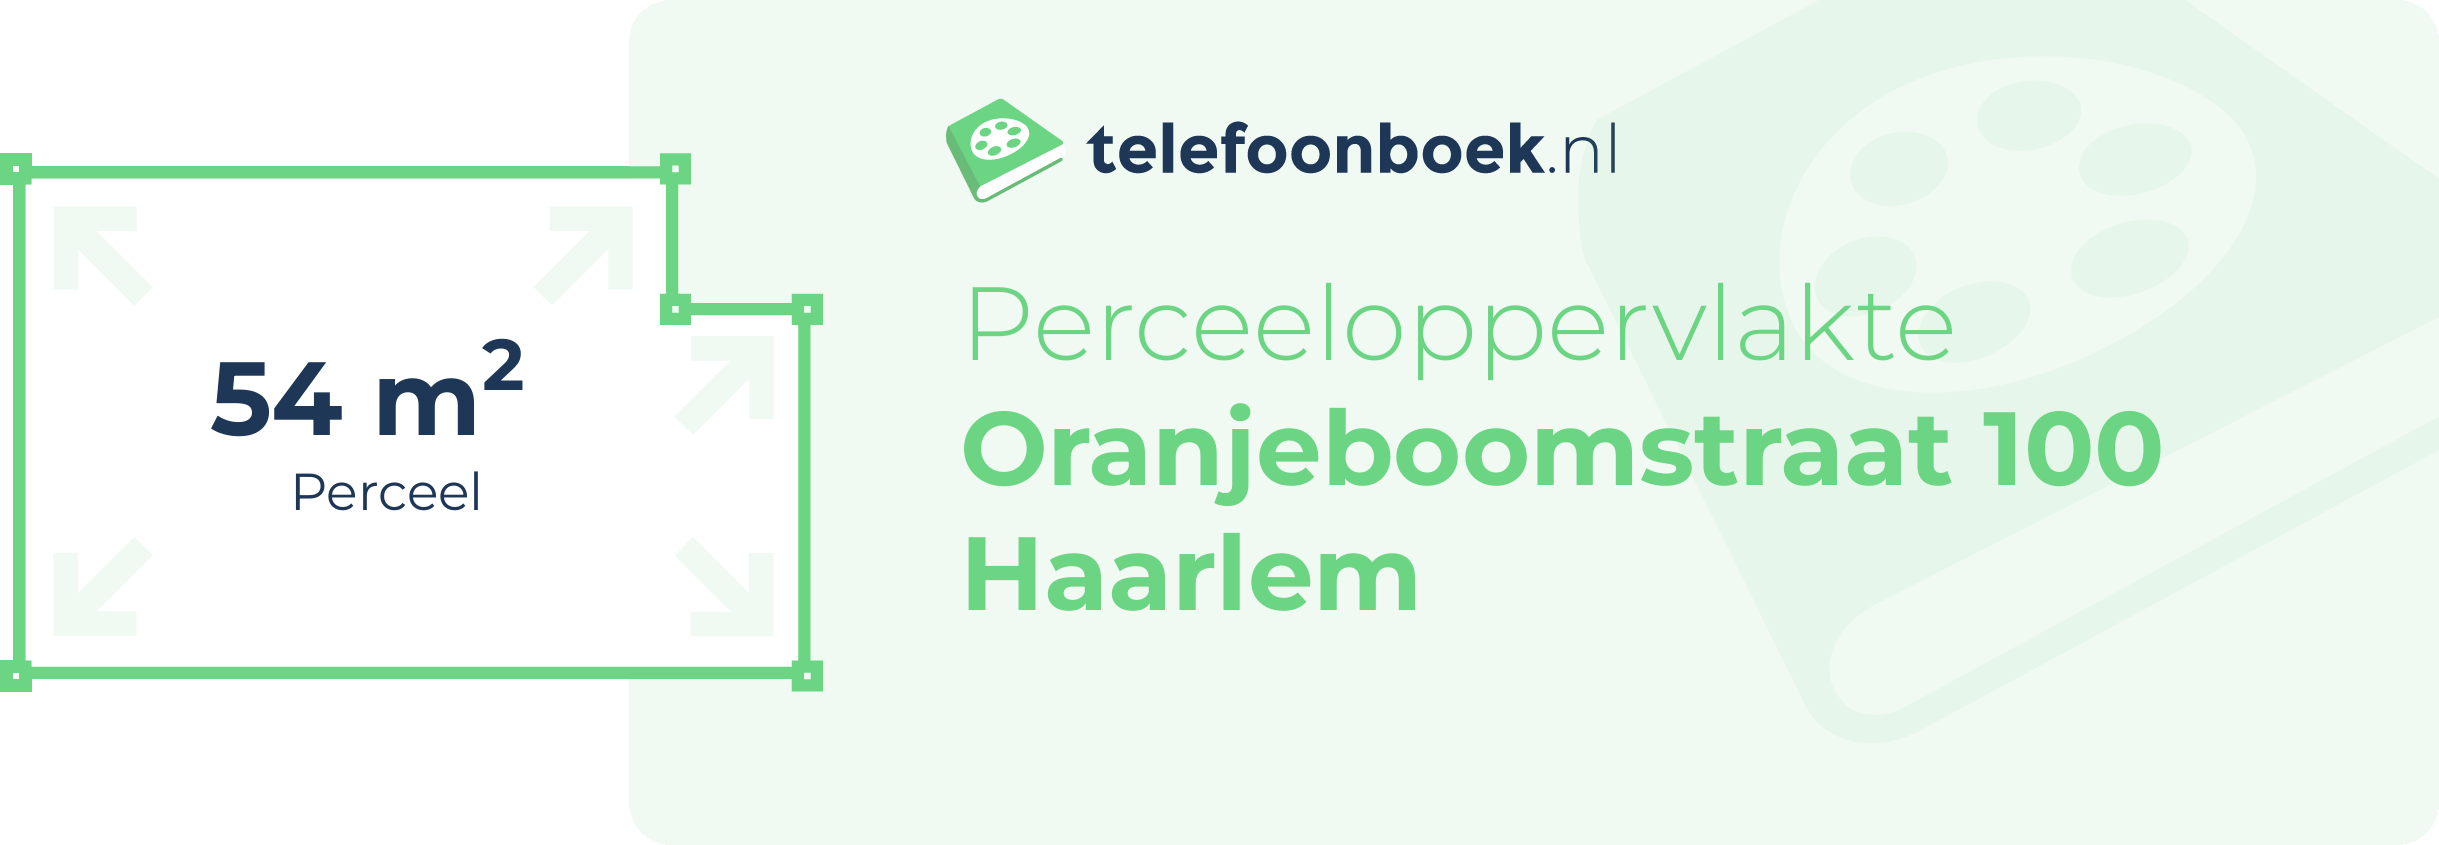 Perceeloppervlakte Oranjeboomstraat 100 Haarlem